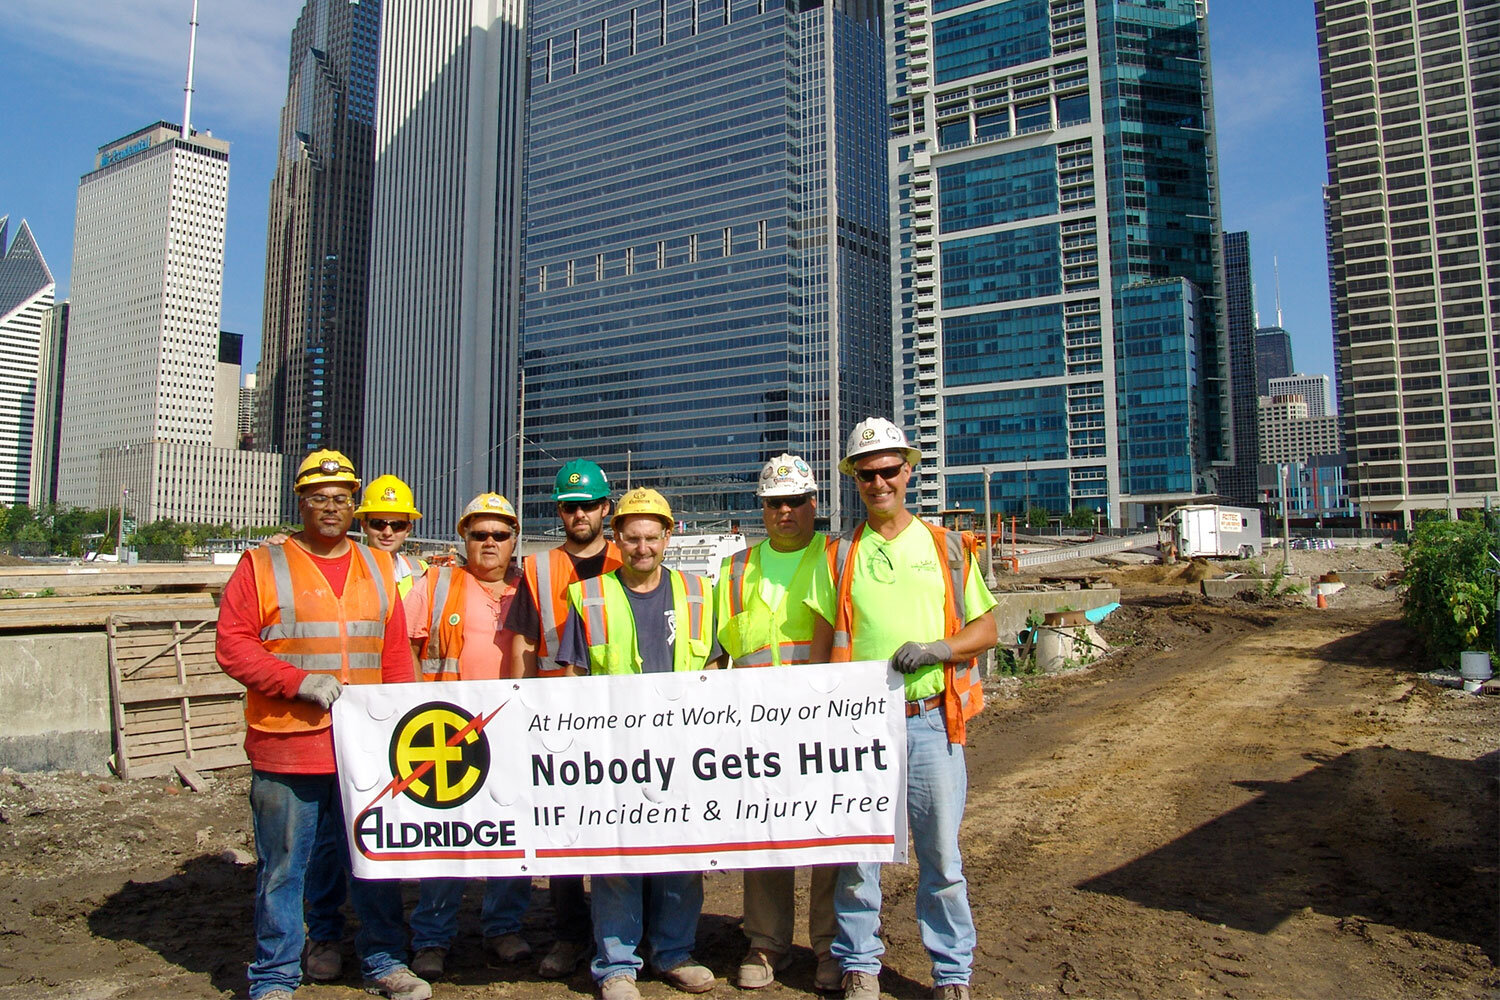 workers-onsite-banner-IIF-safety-aldridge-electric-injury-free.jpg